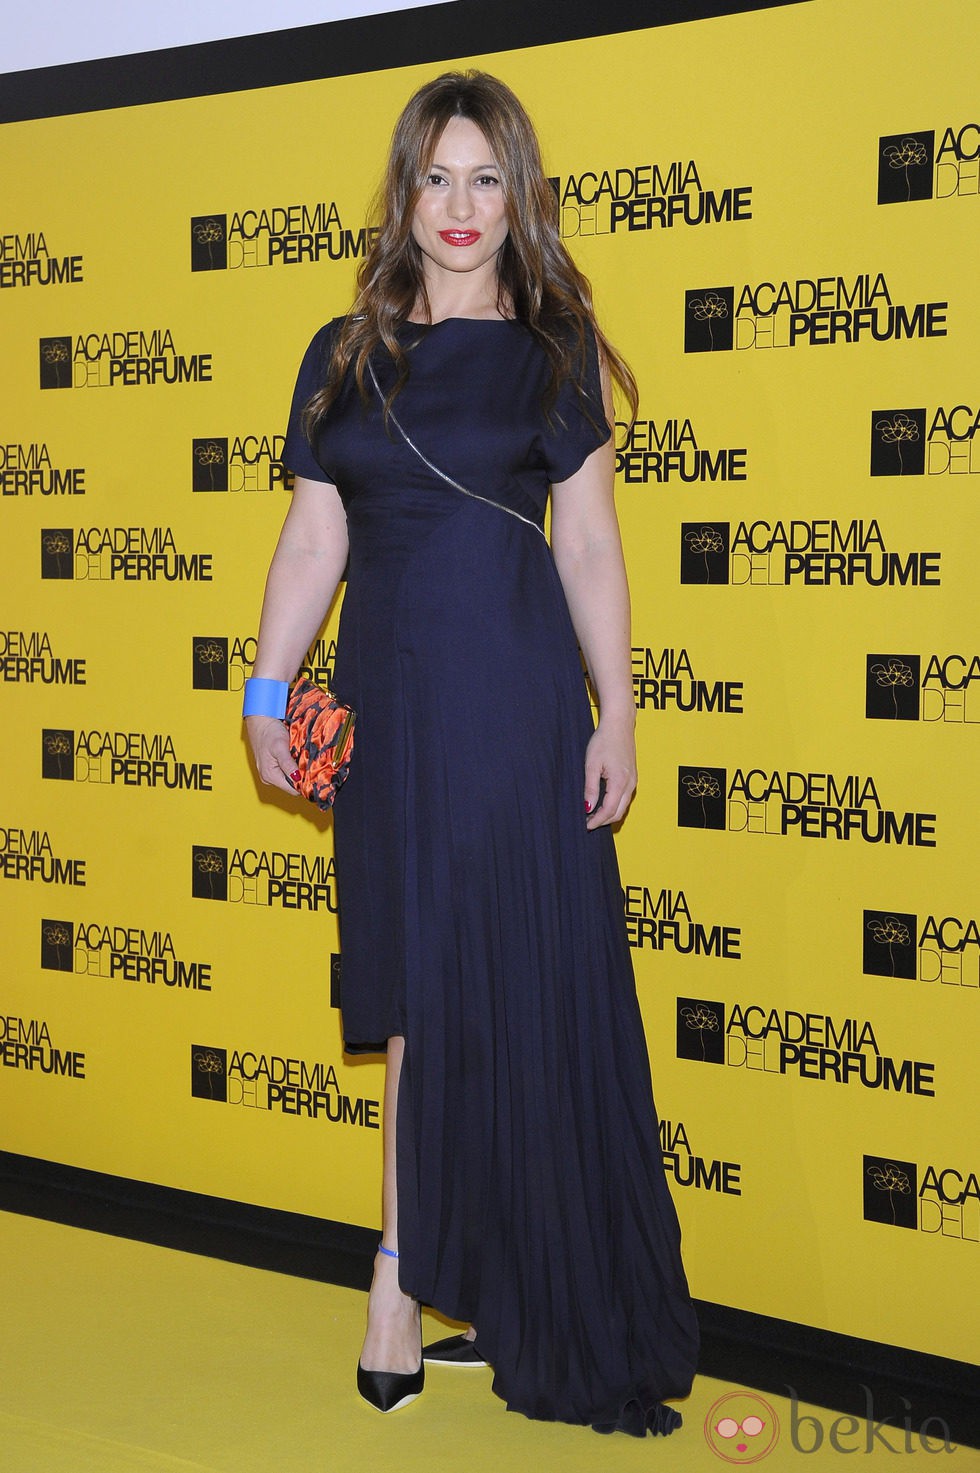 Natalia Verbeke en los Premios Academia del Perfume 2014